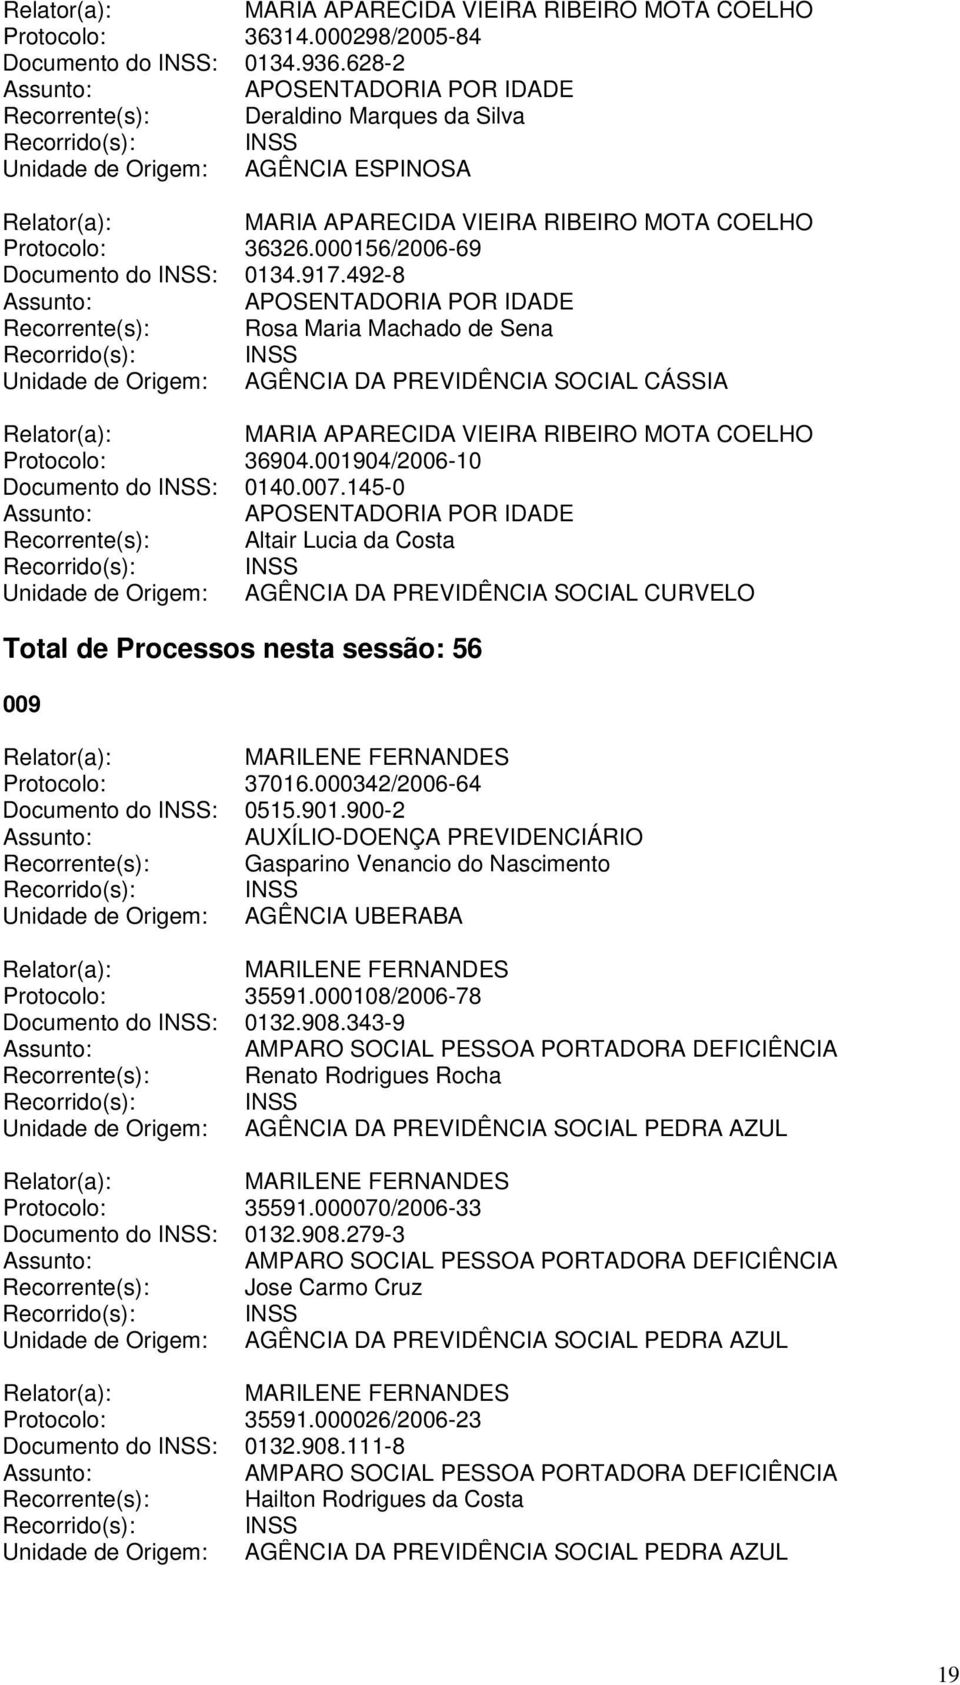 145-0 Recorrente(s): Altair Lucia da Costa Unidade de Origem: AGÊNCIA DA PREVIDÊNCIA SOCIAL CURVELO Total de Processos nesta sessão: 56 009 Protocolo: 37016.000342/2006-64 Documento do INSS: 0515.901.